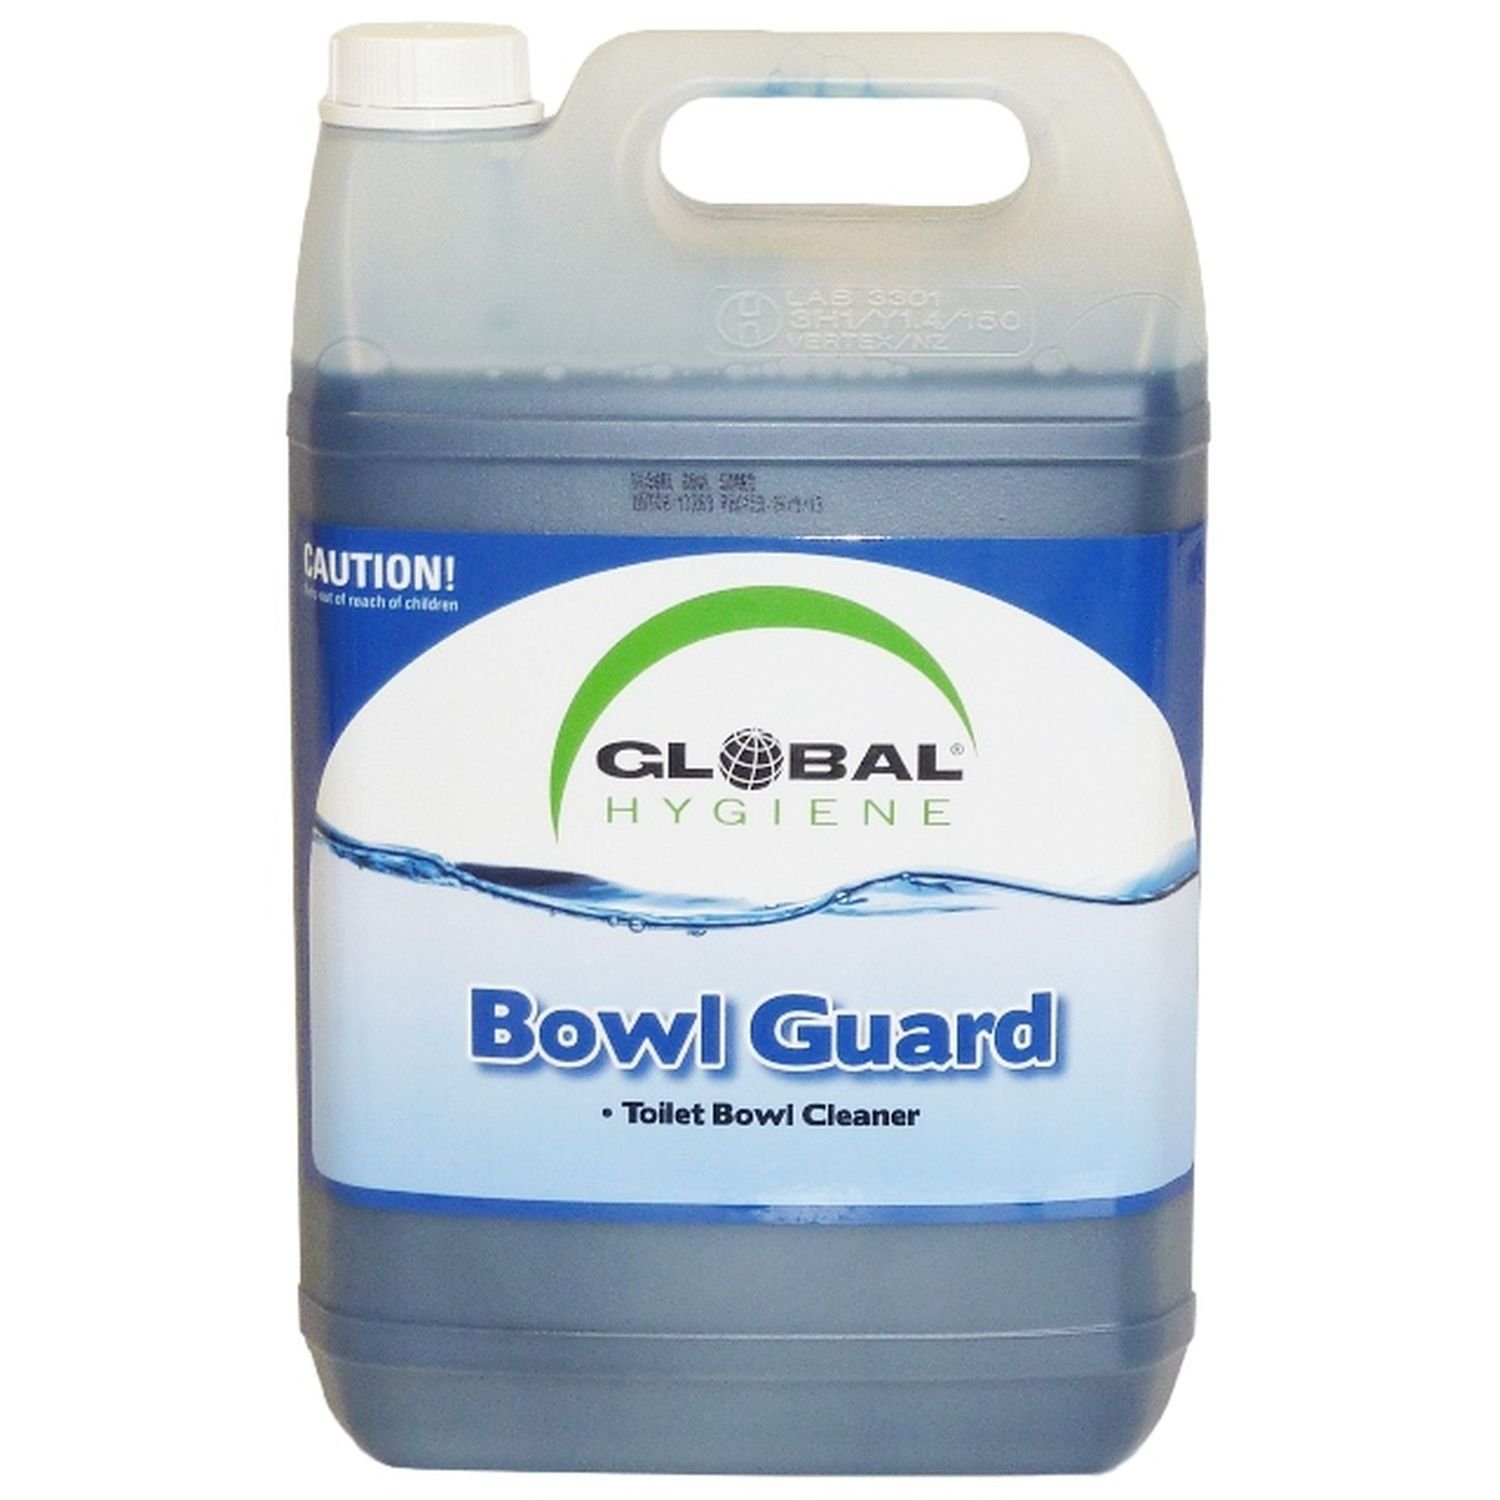 Global Bowl Guard